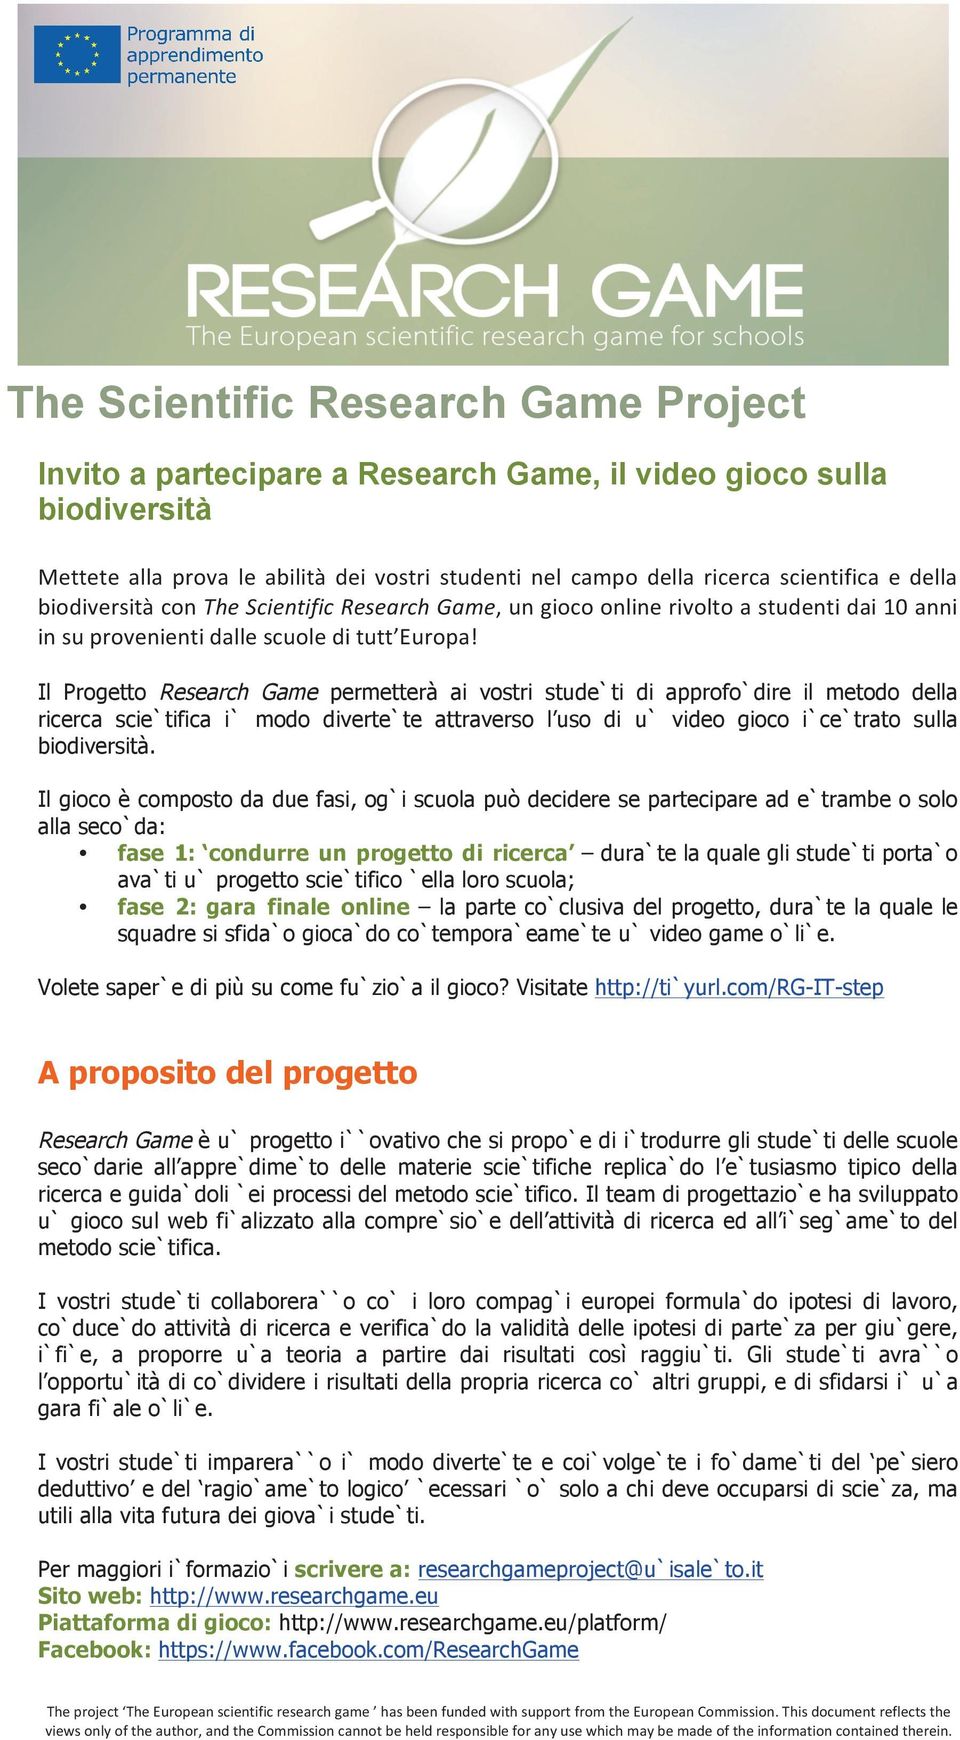 C$ Il Progetto Research Game permetterà ai vostri studenti di approfondire il metodo della ricerca scientifica in modo divertente attraverso l uso di un video gioco incentrato sulla biodiversità.